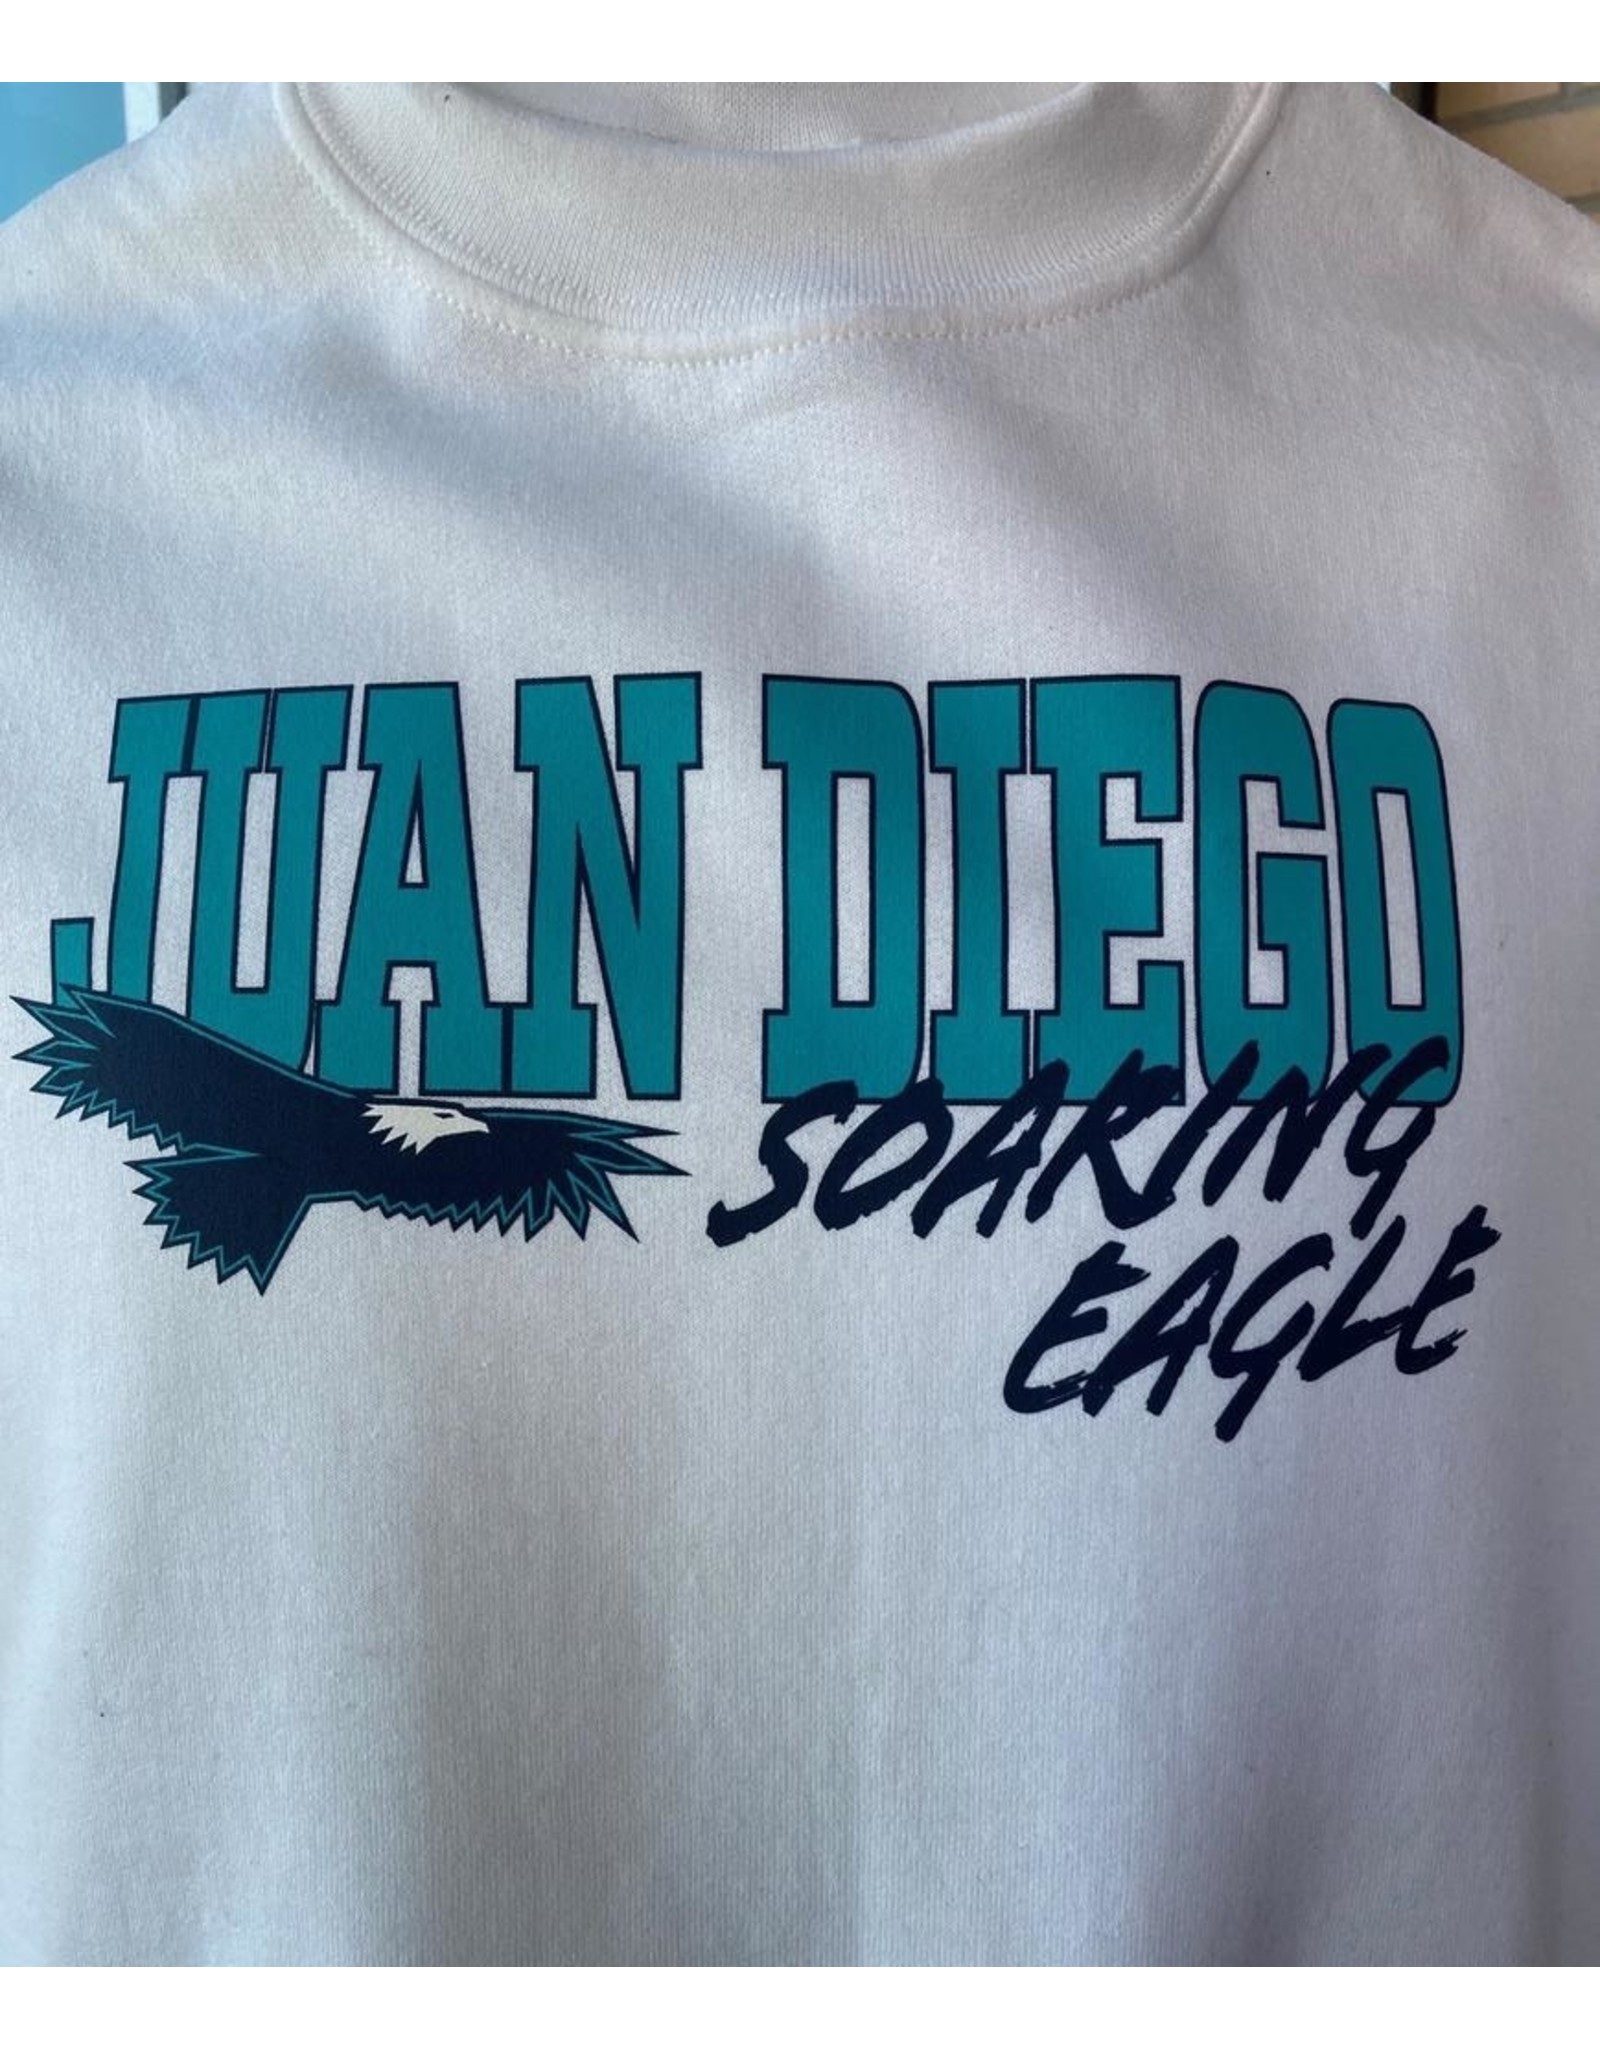 NON-UNIFORM SWEATSHIRT - Juan Diego Soaring Eagle Crewneck Sweatshirt